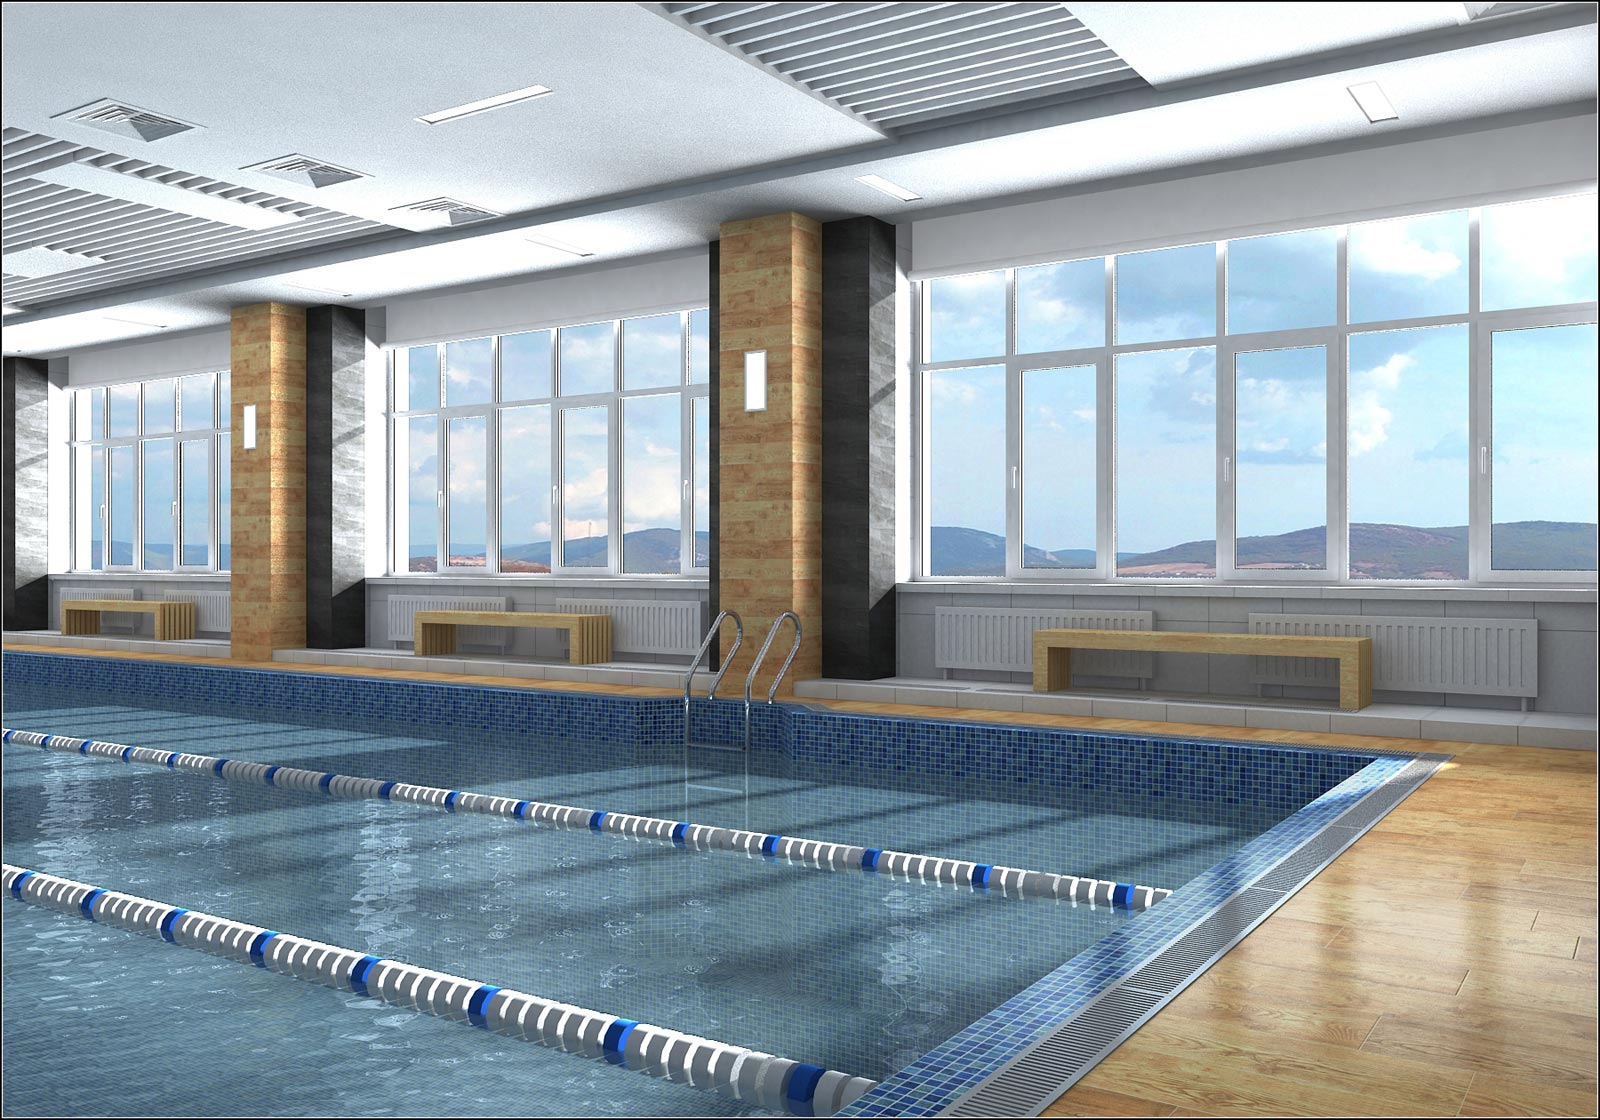 Chernihiv havuz iç tasarım projesi in 3d max vray 1.5 resim